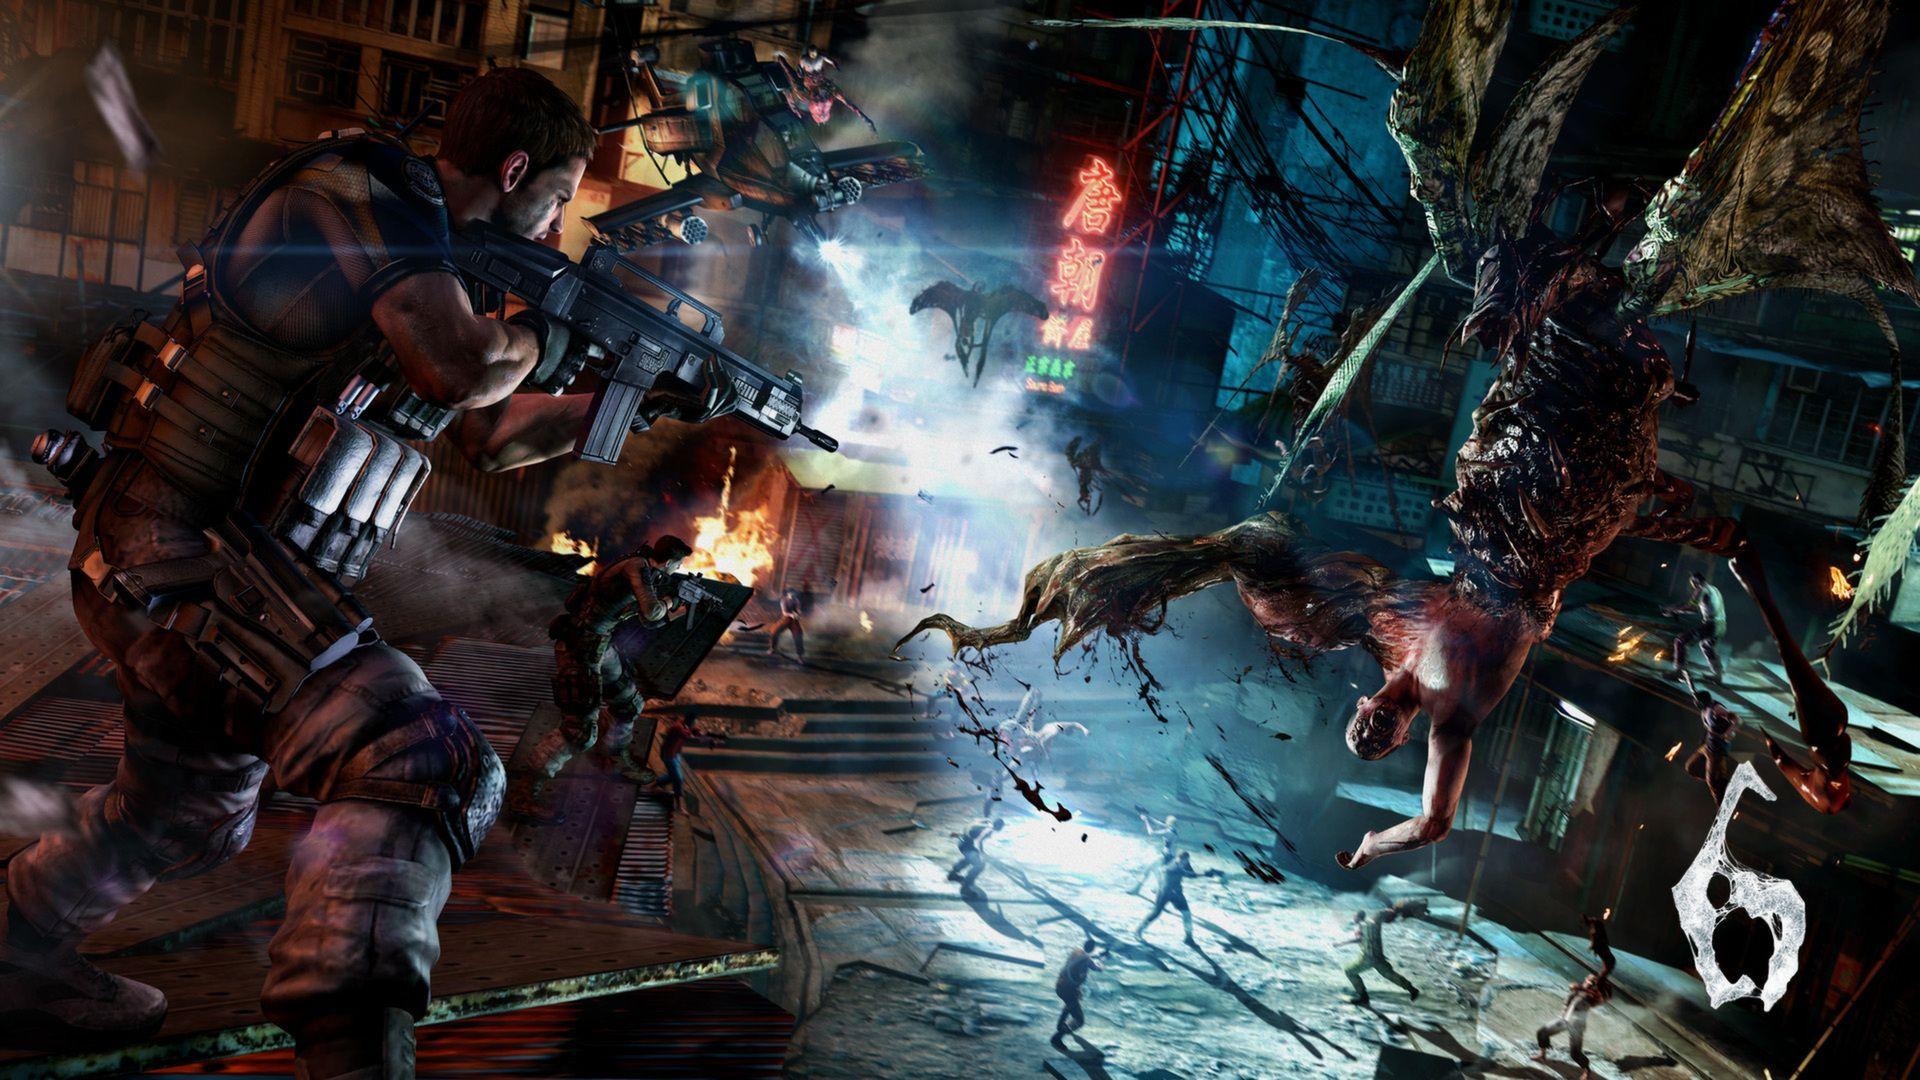 Resident Evil 6 Wallpaper on Steam